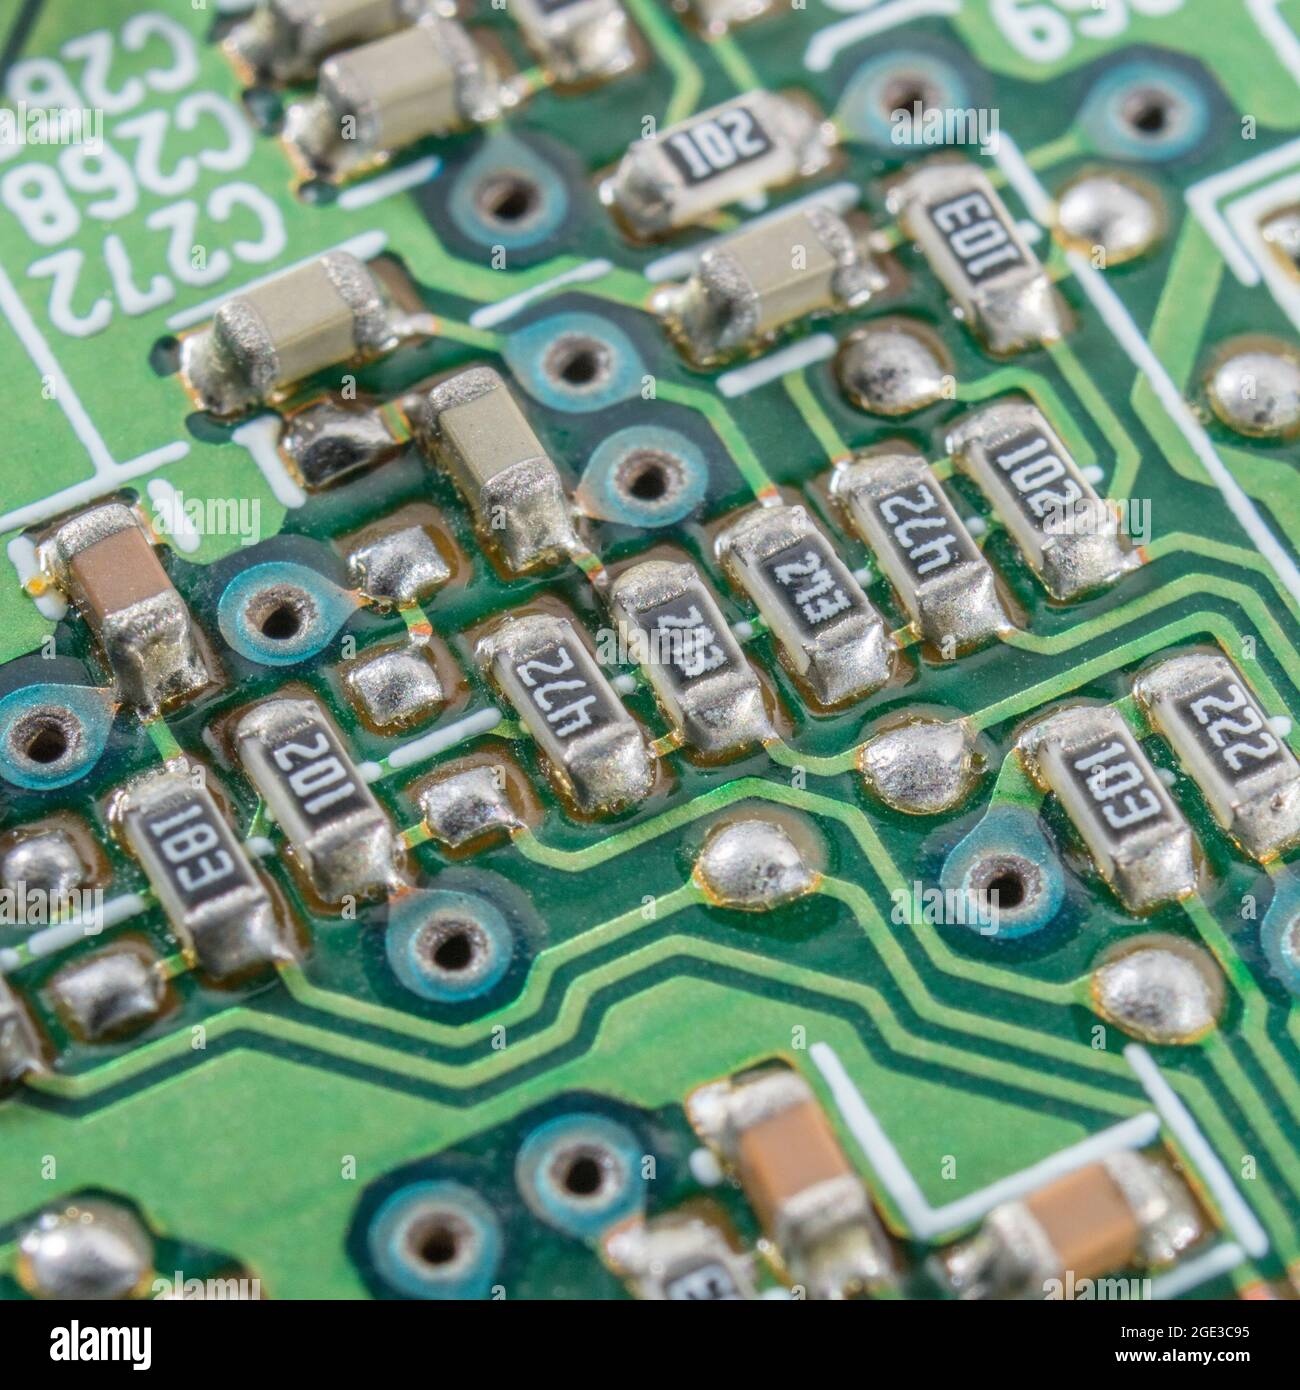 Makroaufnahme von elektronischen SMD-/SMD-Widerständen (schwarz) und Kondensatoren auf der leiterplatte sowie blauen Ringen mit herkömmlichem Durchgangslöten Stockfoto